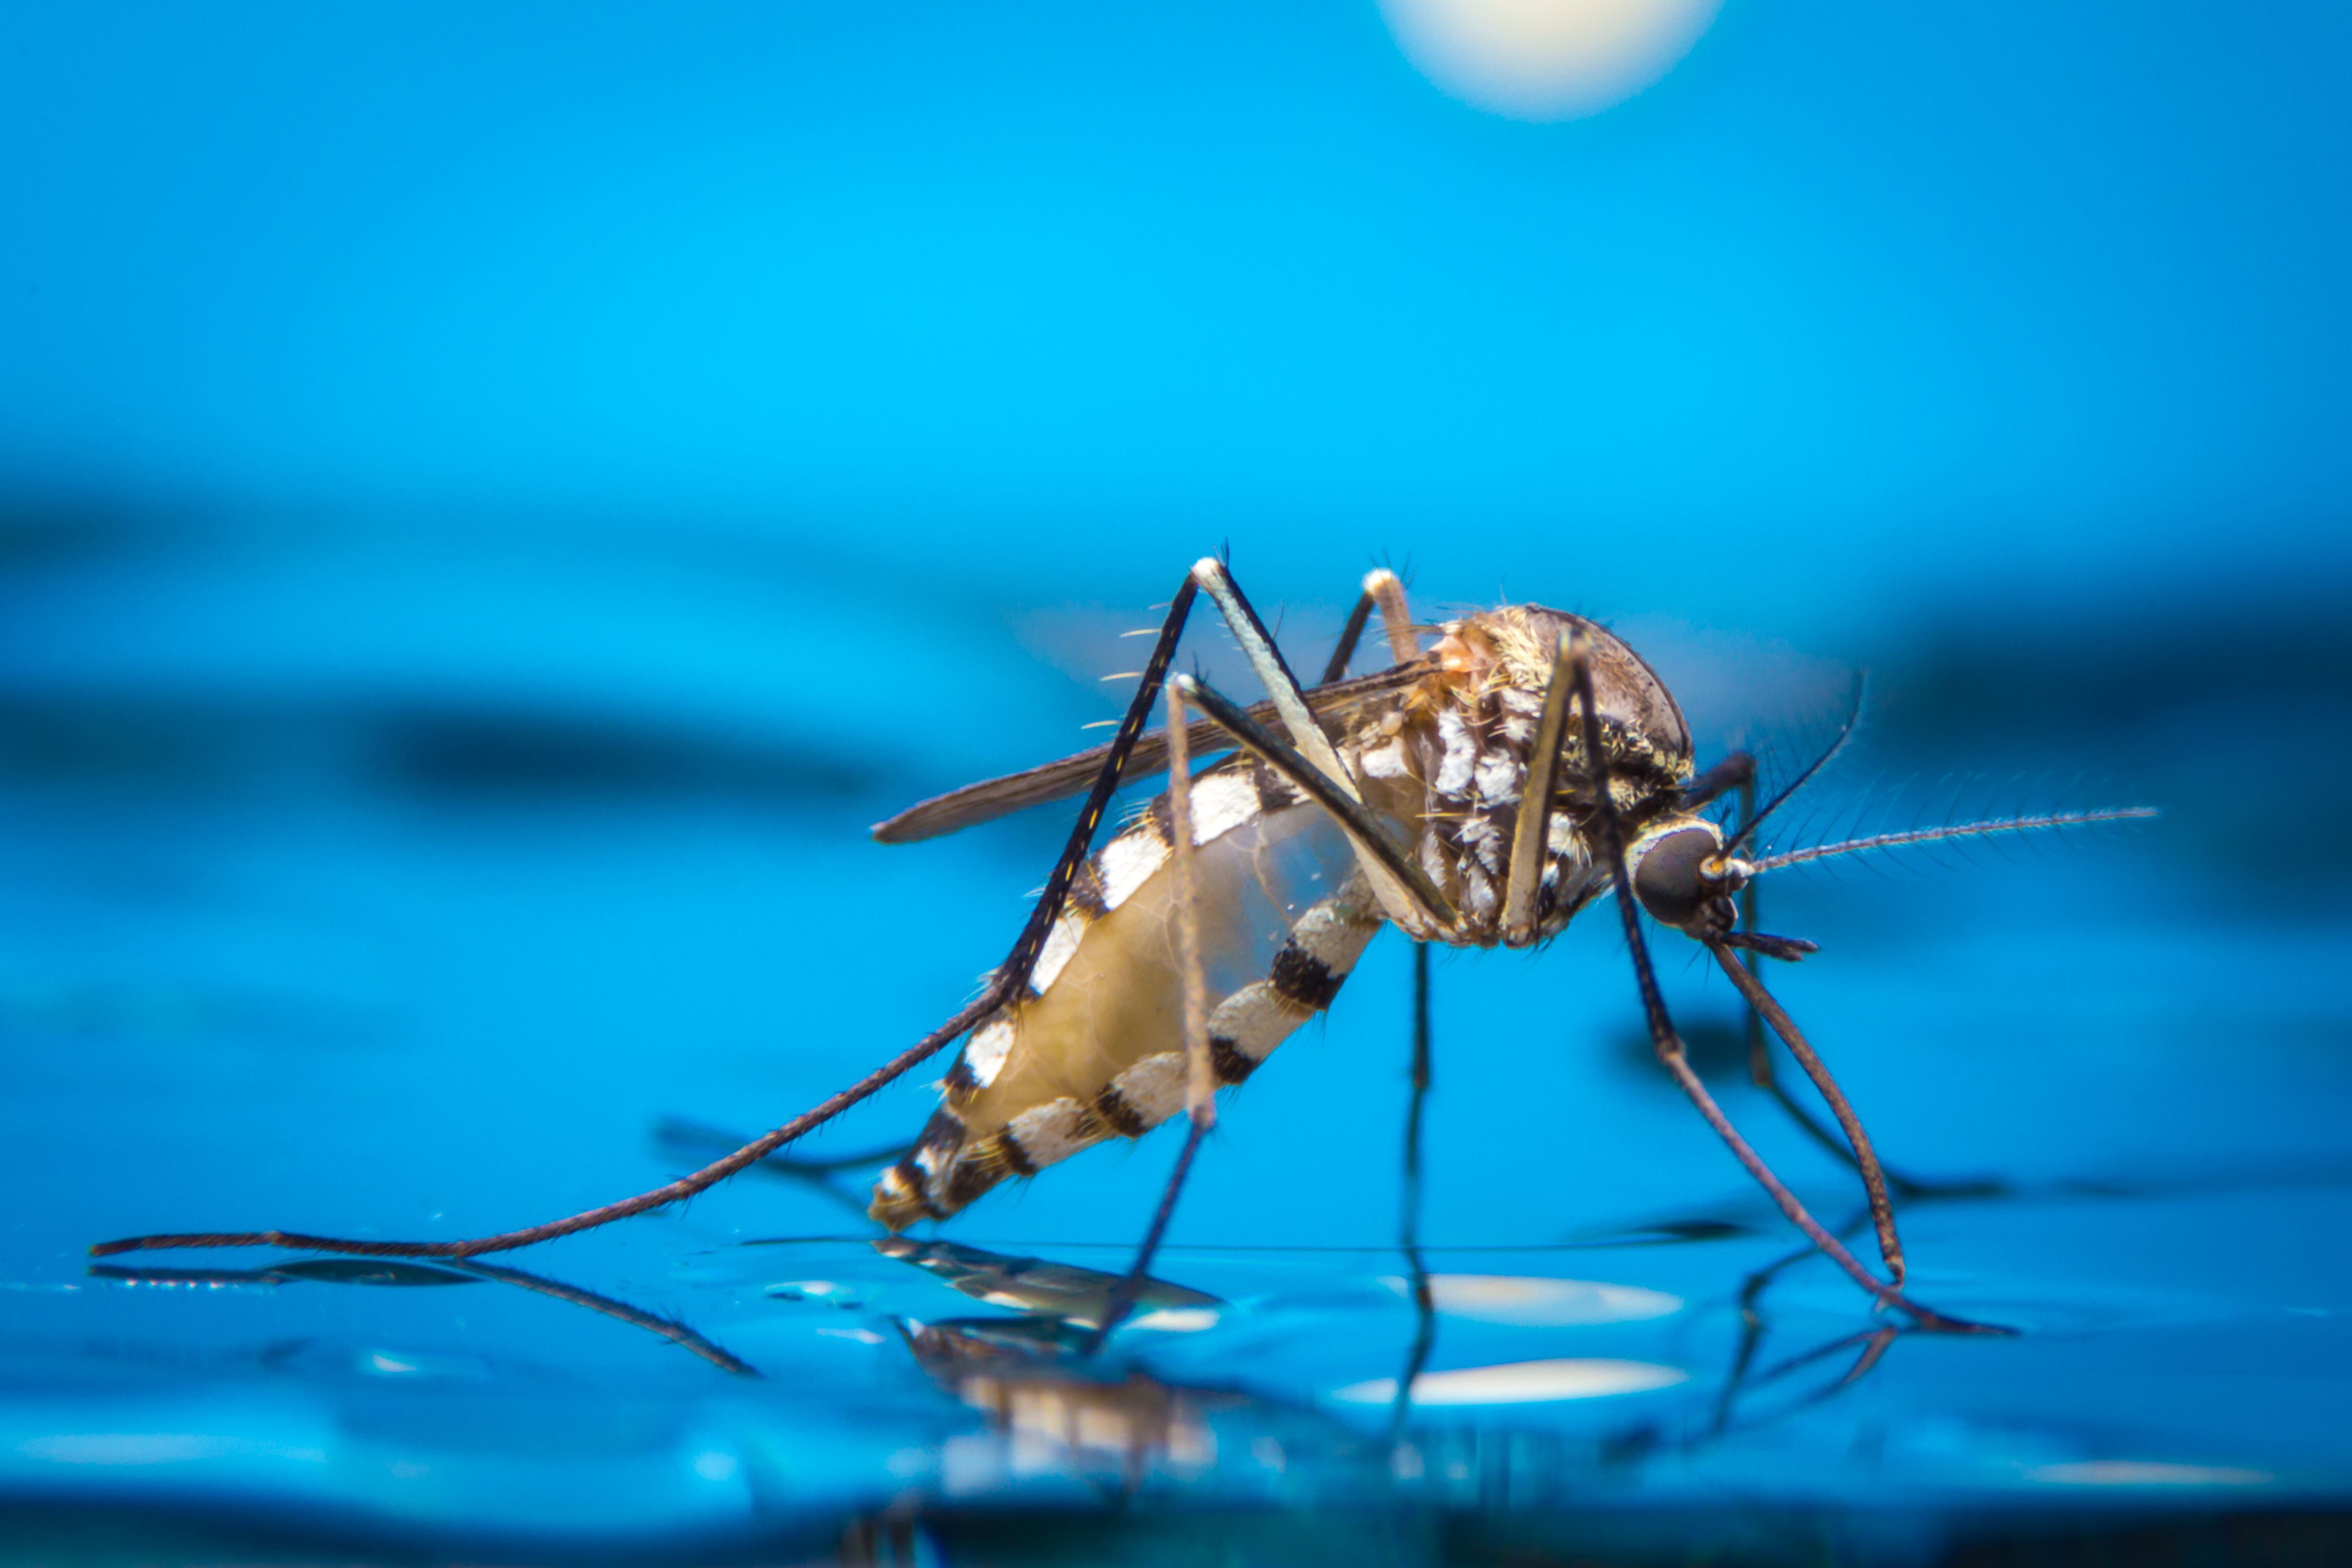 El mosquito Aedes aegypti, transmisor del dengue, causa preocupación en países como Honduras y Panamá, con altos índices de casos y decesos.